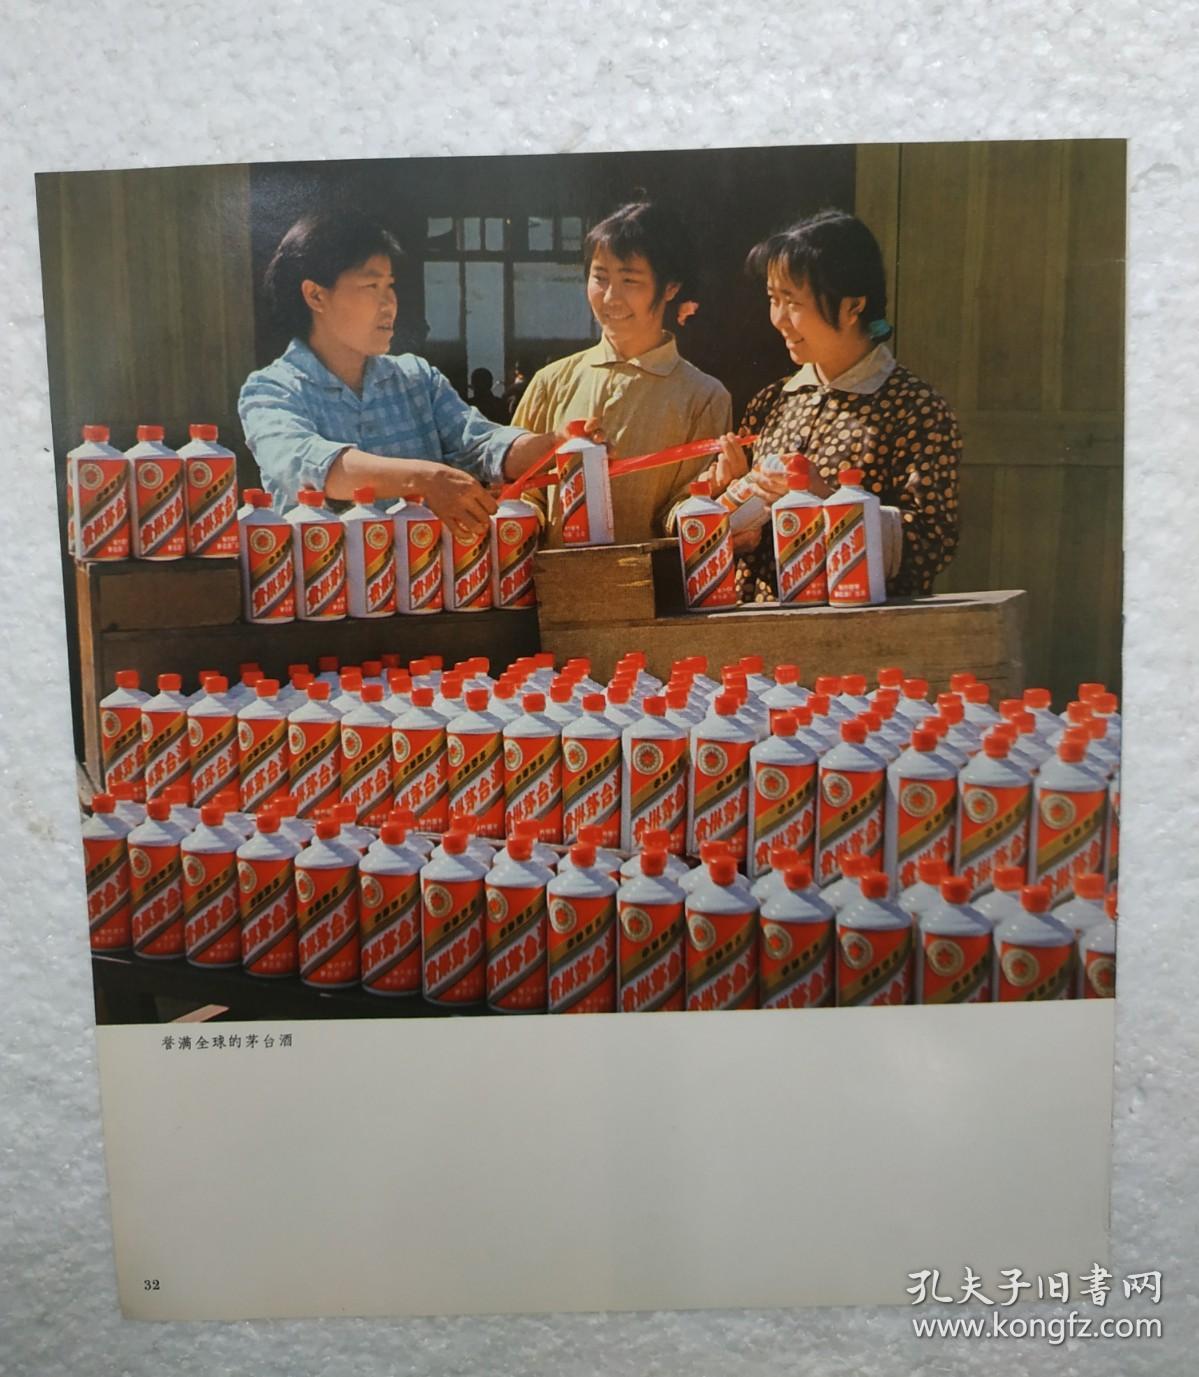 贵州酒，誉满全球的茅台酒，茅台酒厂，酒厂广告，七十年代，